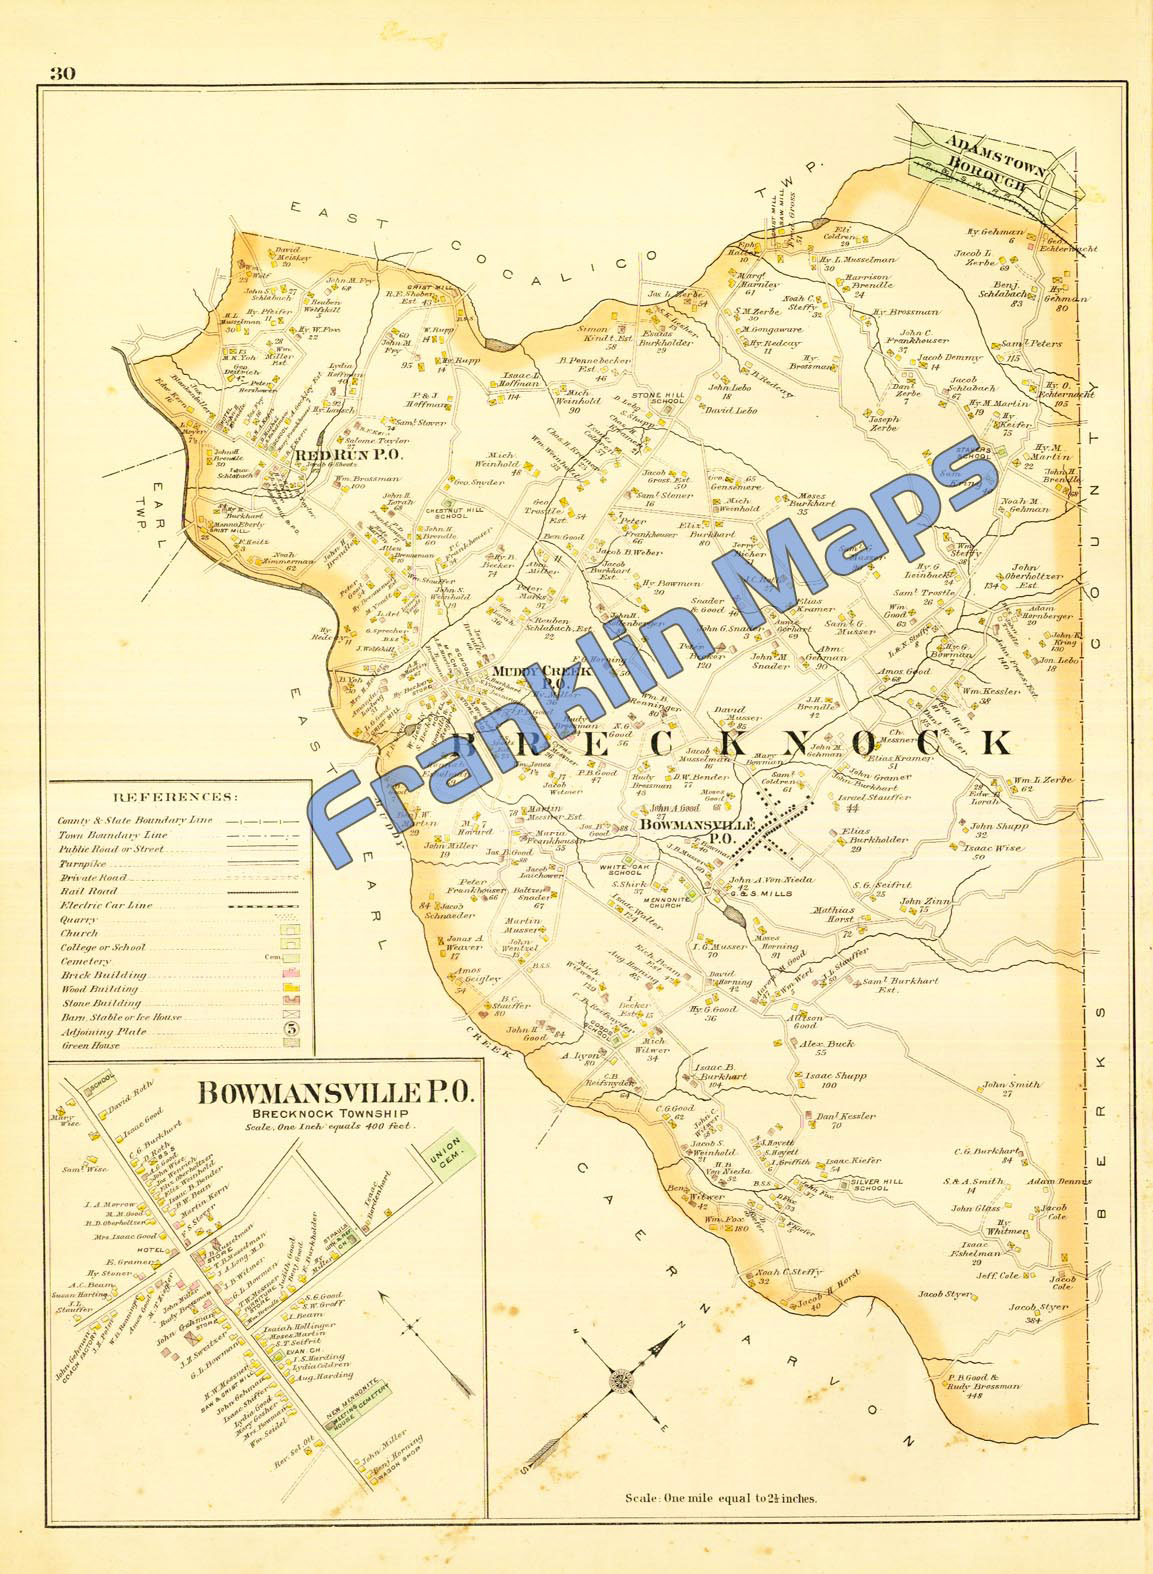 ANN ST ATLAS MAP 1899 LANCASTER CITY COUNTY PA LANCASTER CEMETERY DUKE ST ST 